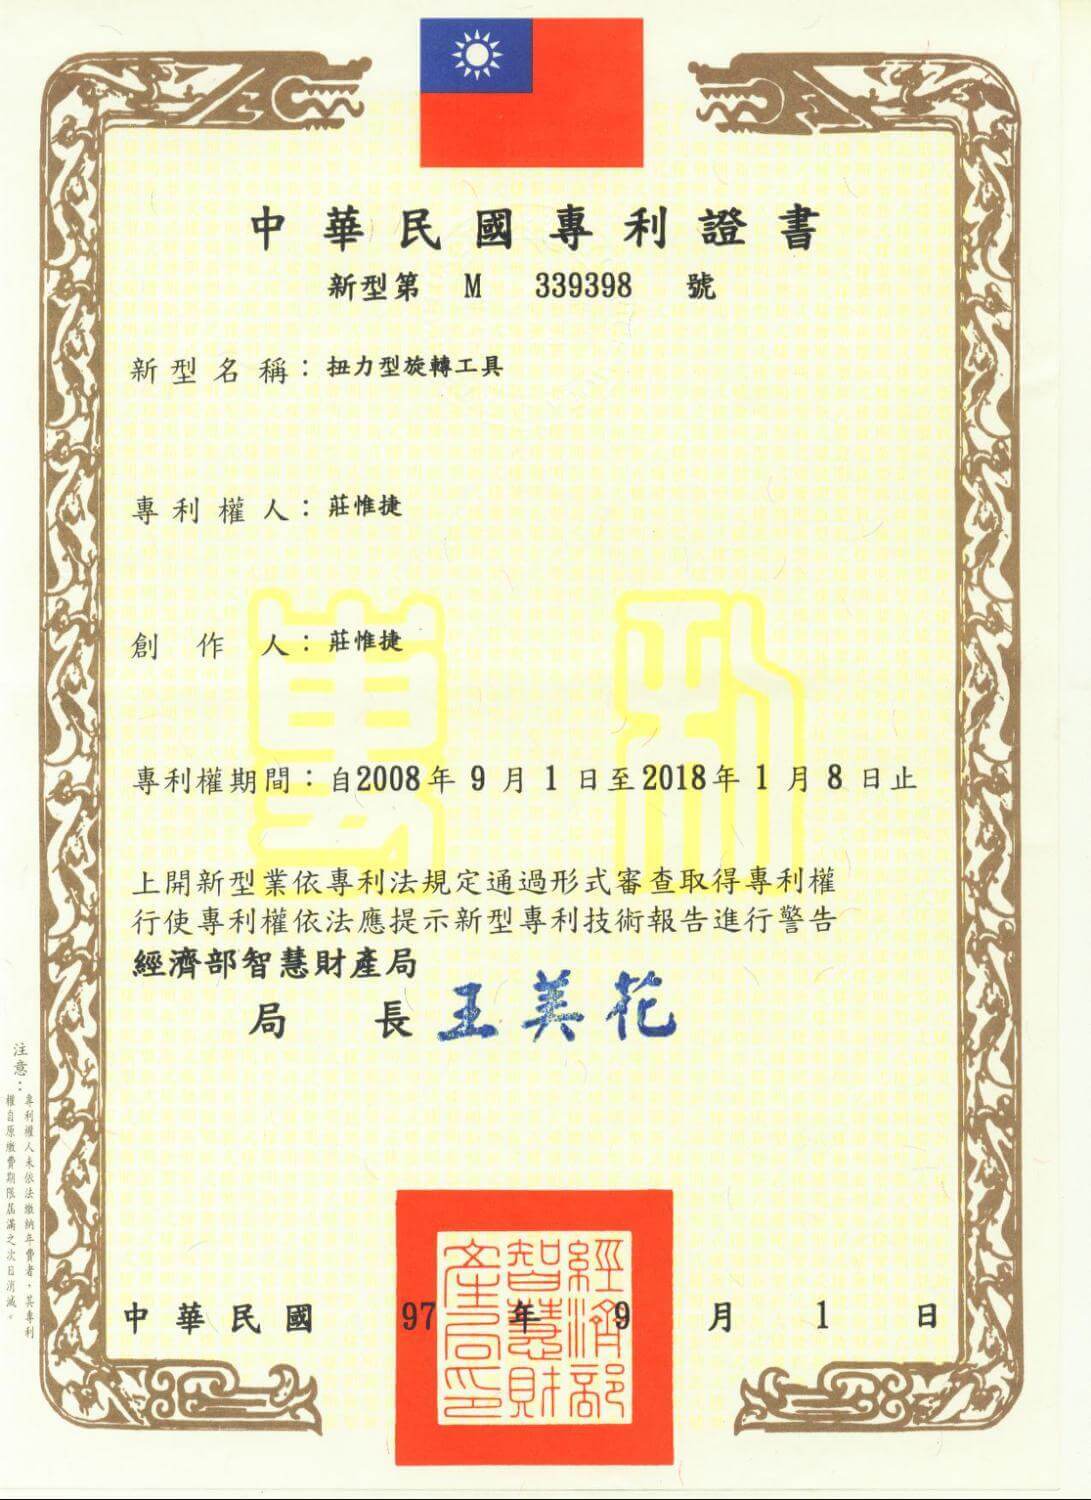 Chienfu-Tec CNC patents in Taiwan-7